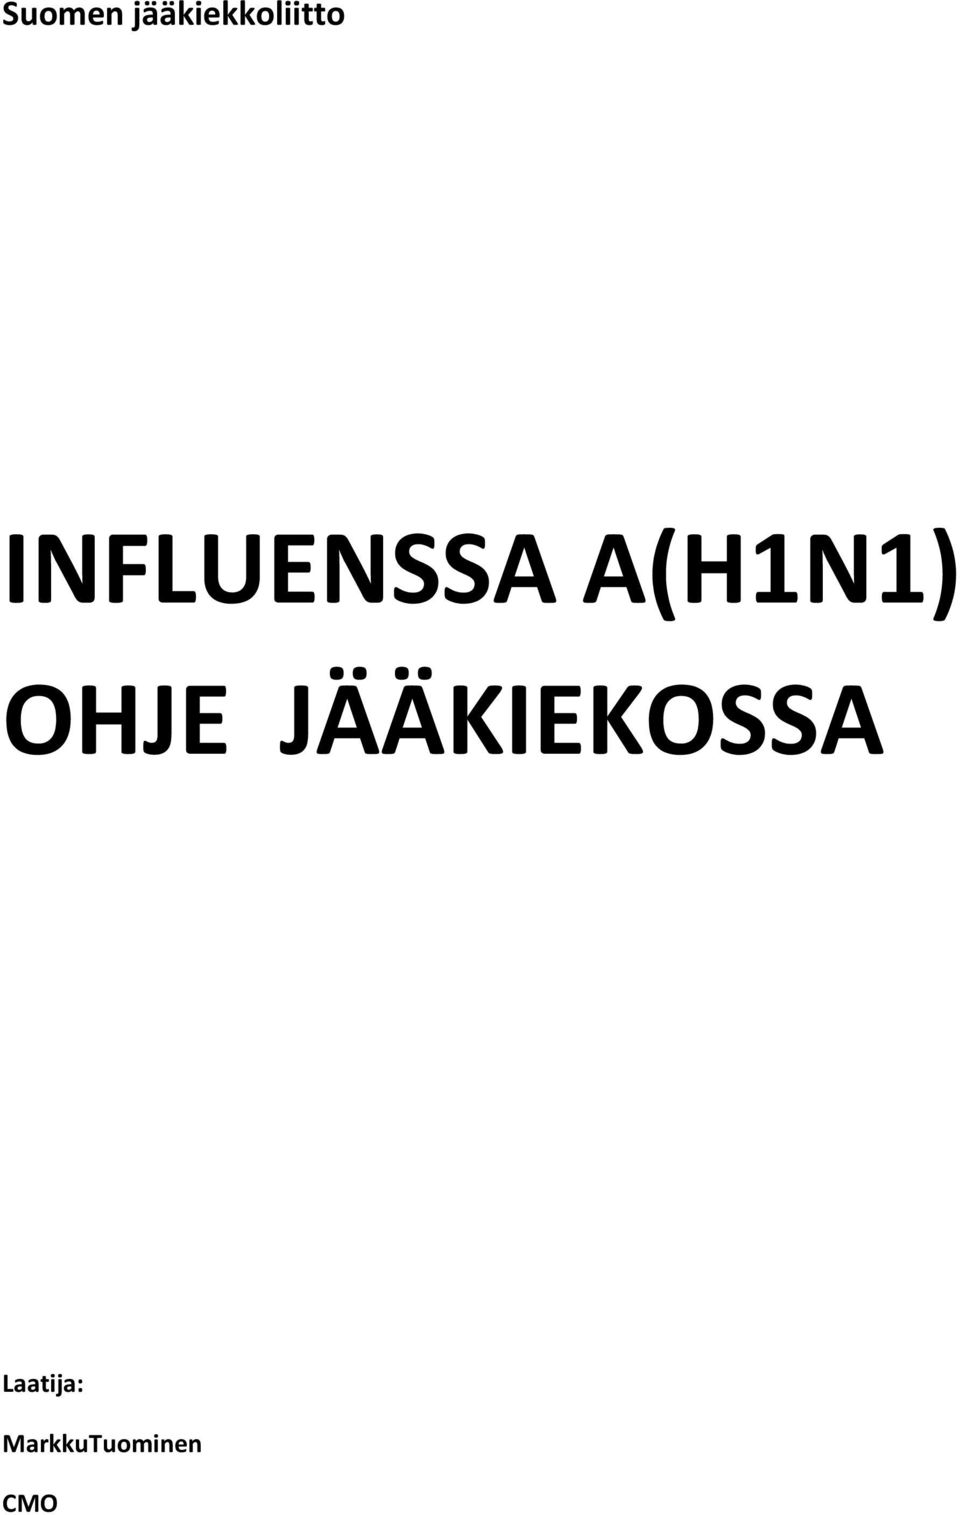 INFLUENSSA A(H1N1)